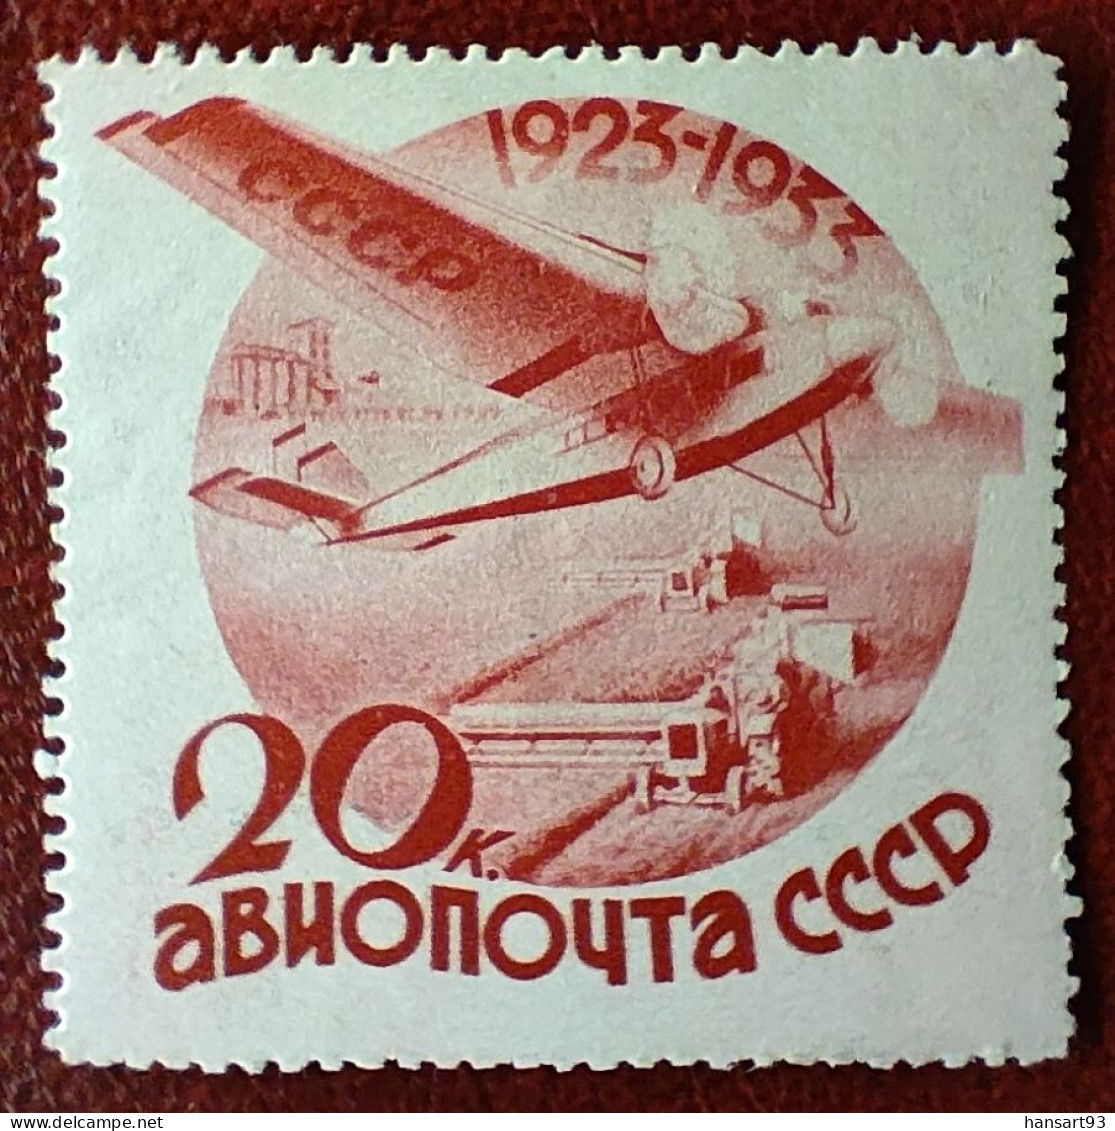 URSS Rare Poste Aérienne N° 43 N* TTB Avec Un Petit Pli Horizontal ! Cote 2020 : 50,00 Euros ! A Voir Absolument !! - Nuevos